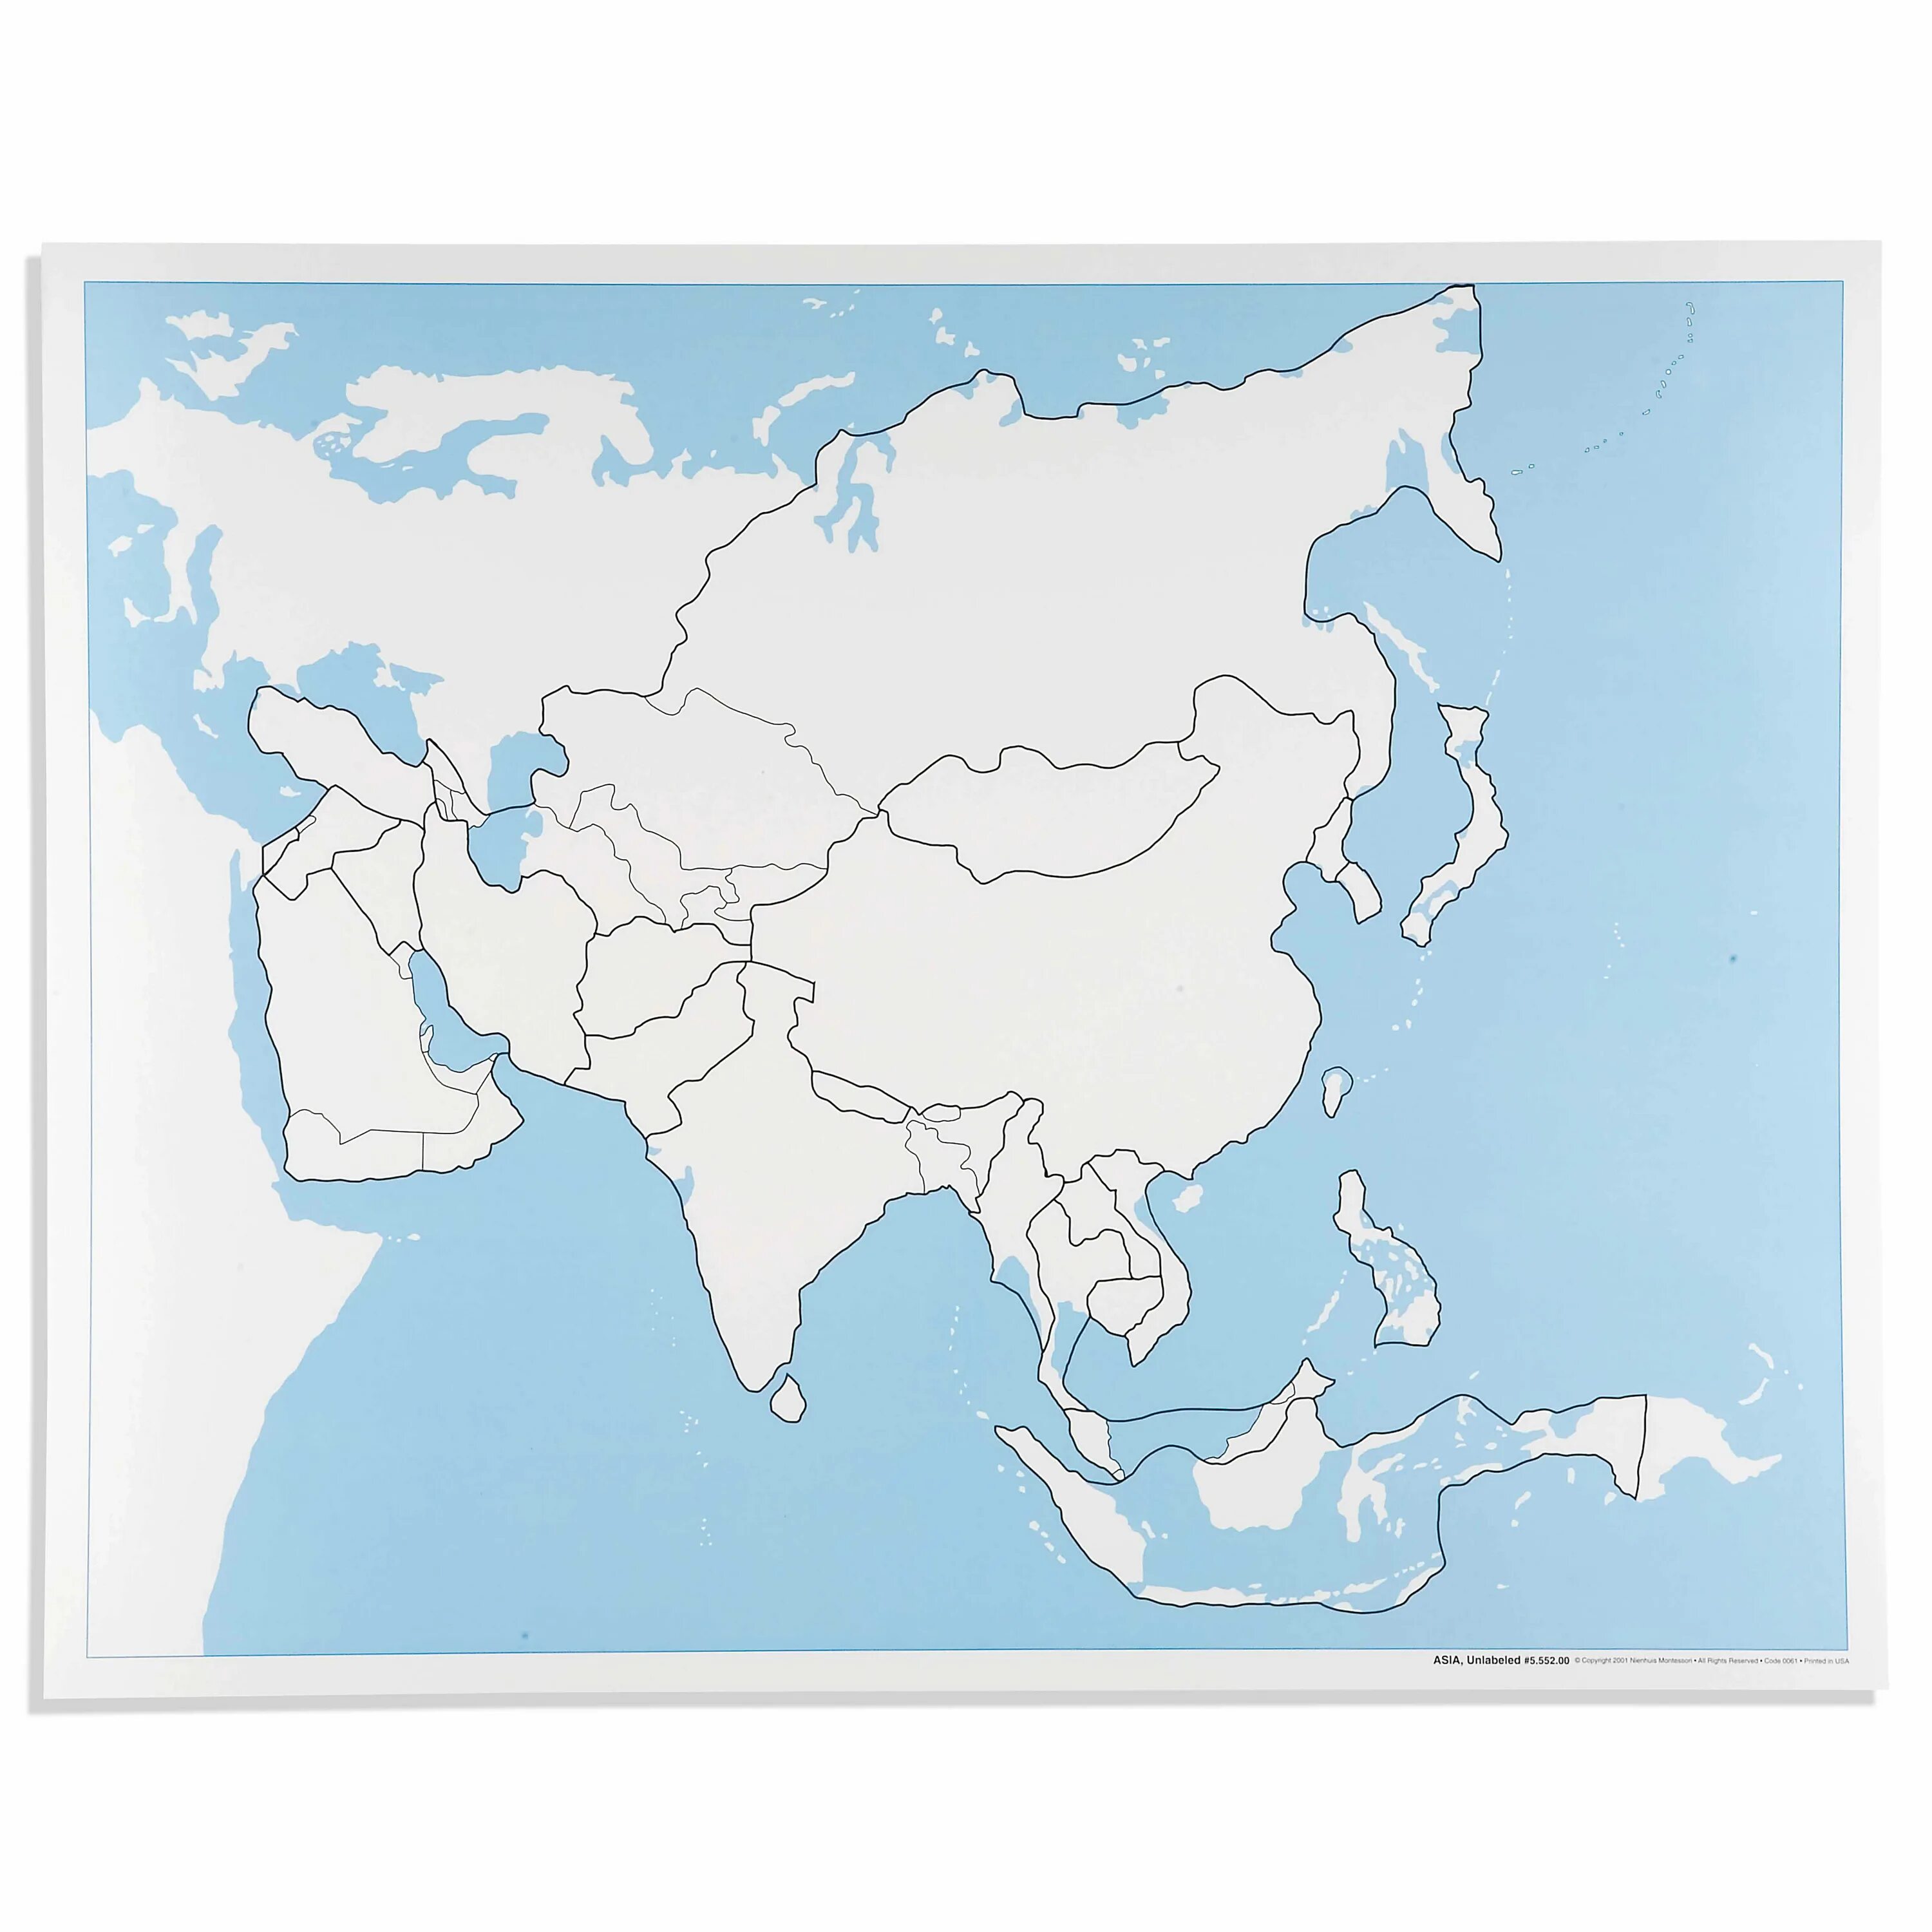 Контурные карты регионов азии. Карта зарубежной Азии пустая. Контурная карта Азии. Политическая контурная карта Азии. Политическая карта Азии пустая.